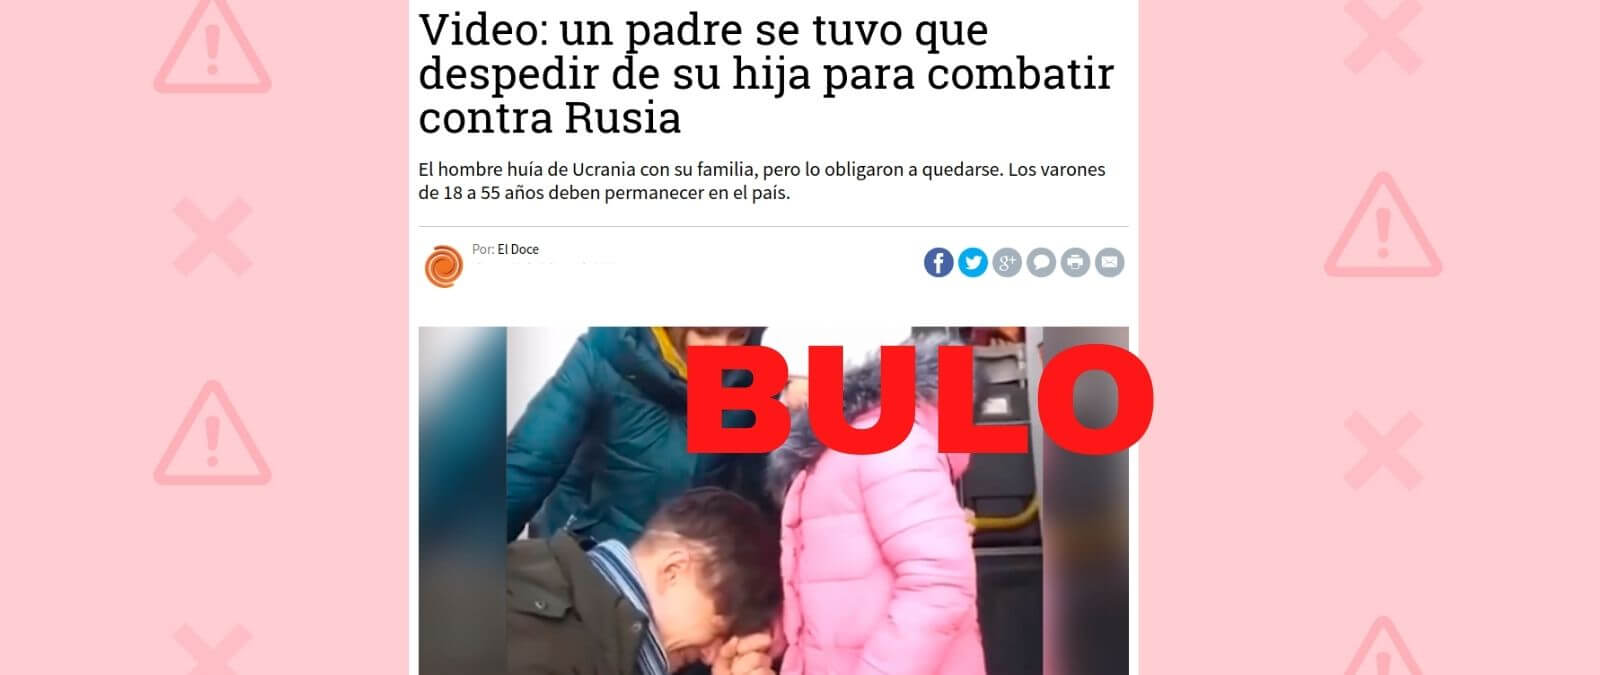 No, este padre no está despidiéndose de su hija para “combatir contra  Rusia” ·  - Periodismo para que no te la cuelen